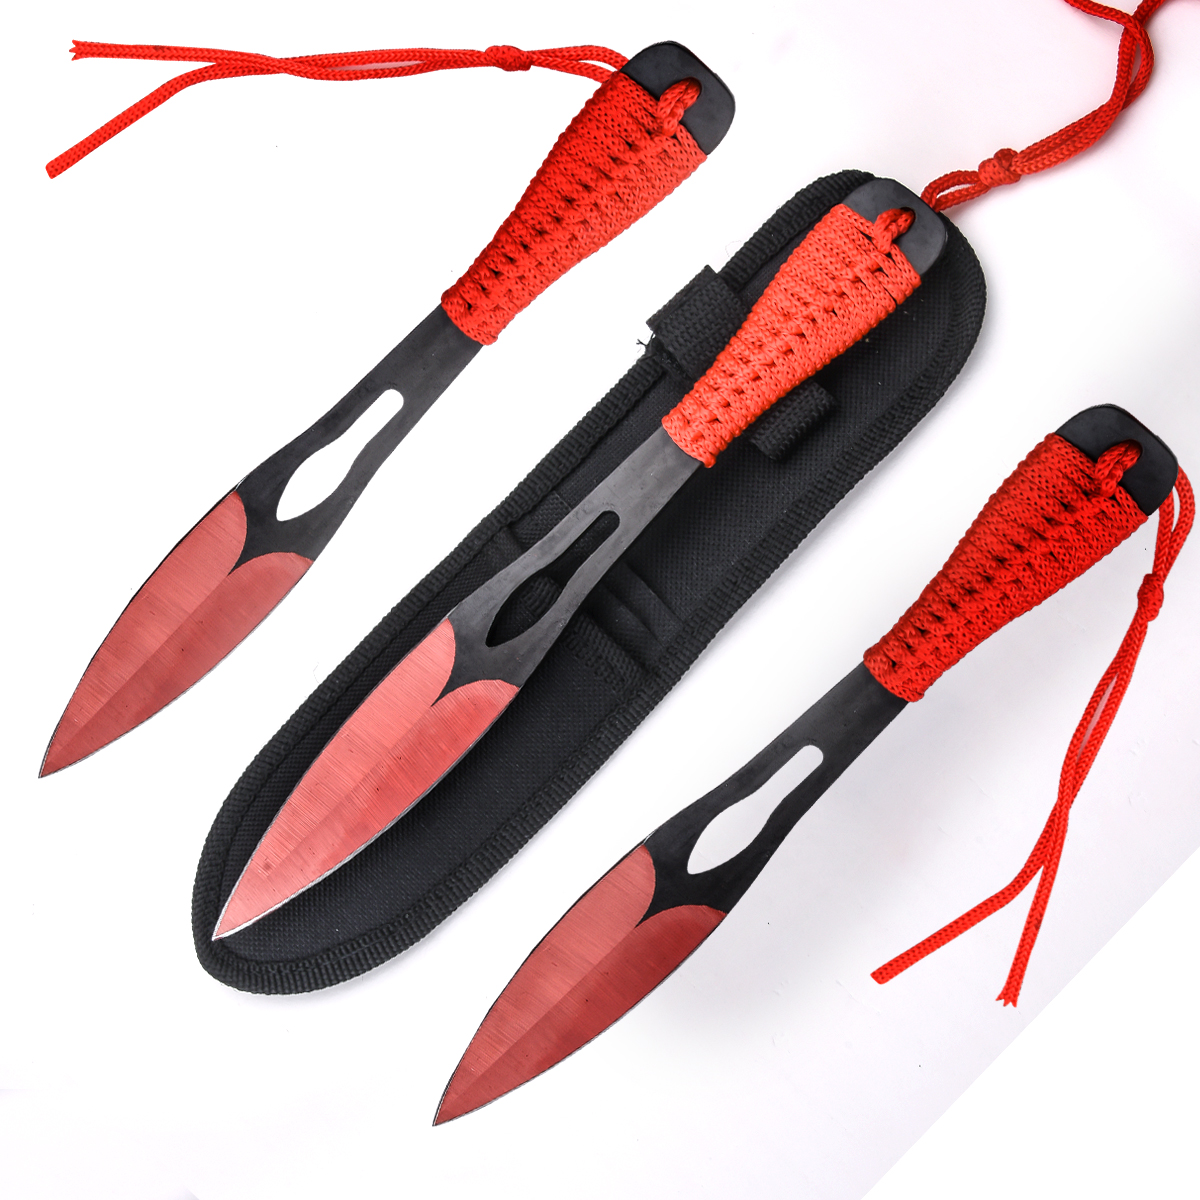 Заказать набор из 3-х сбалансированных метательных ножей